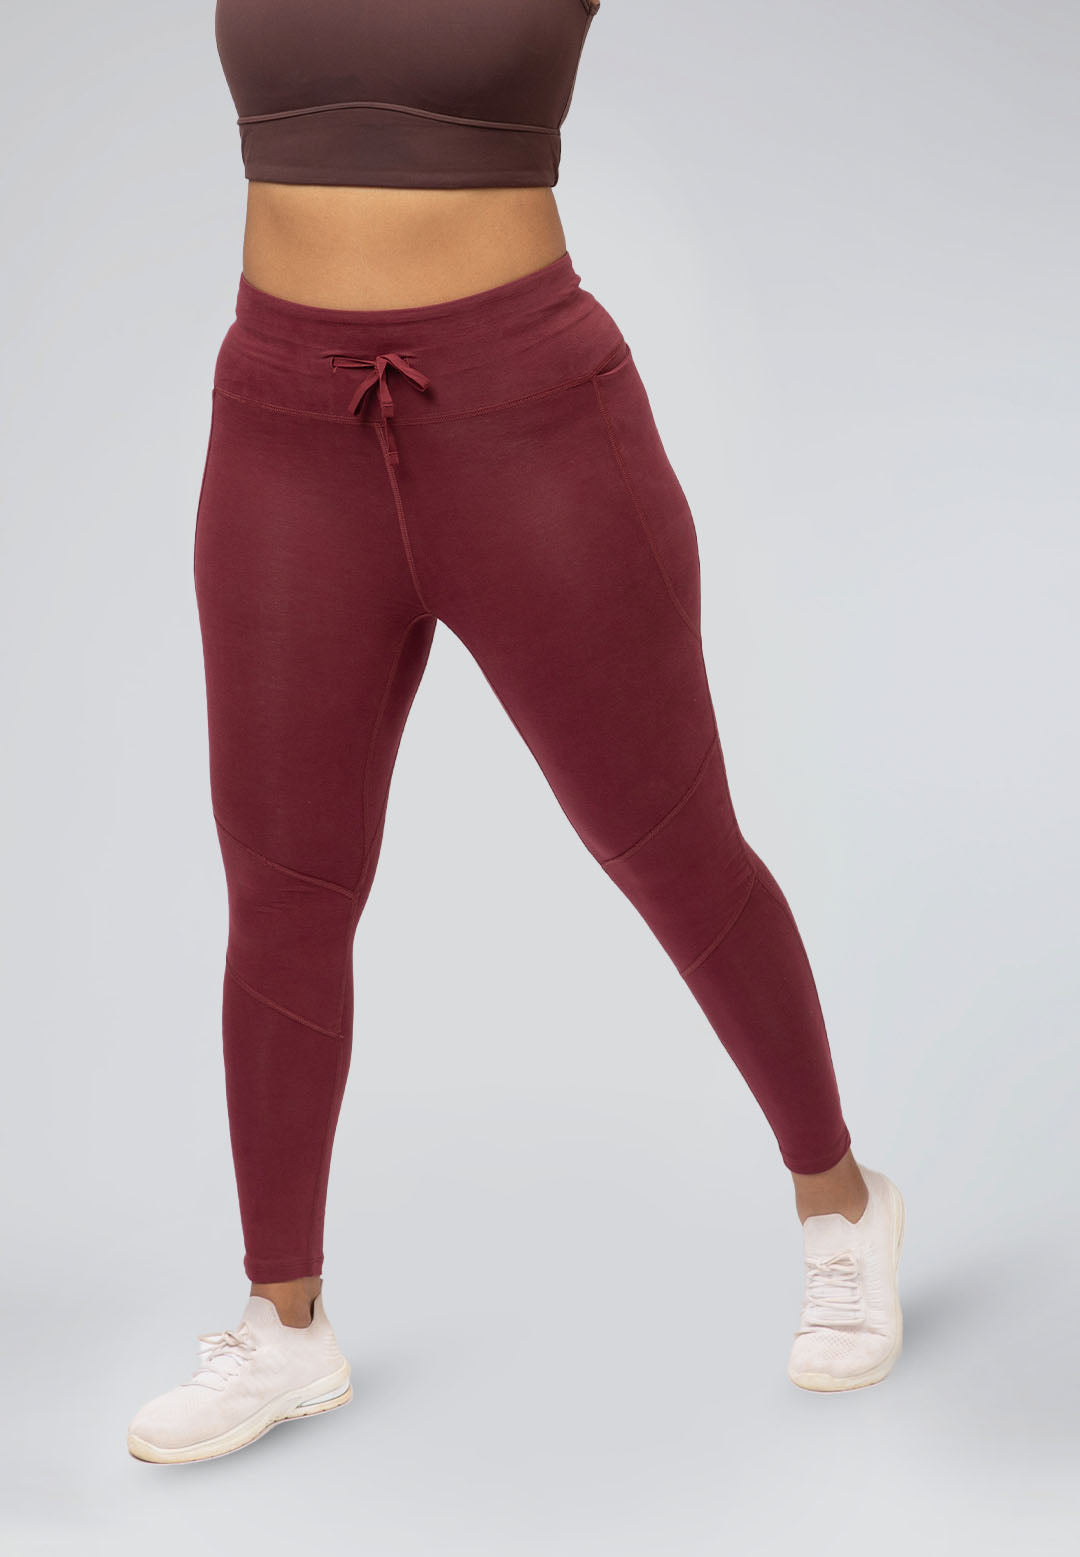 Women Cotton Leggings Mix Color Solid Regular Plus for Women Yoga